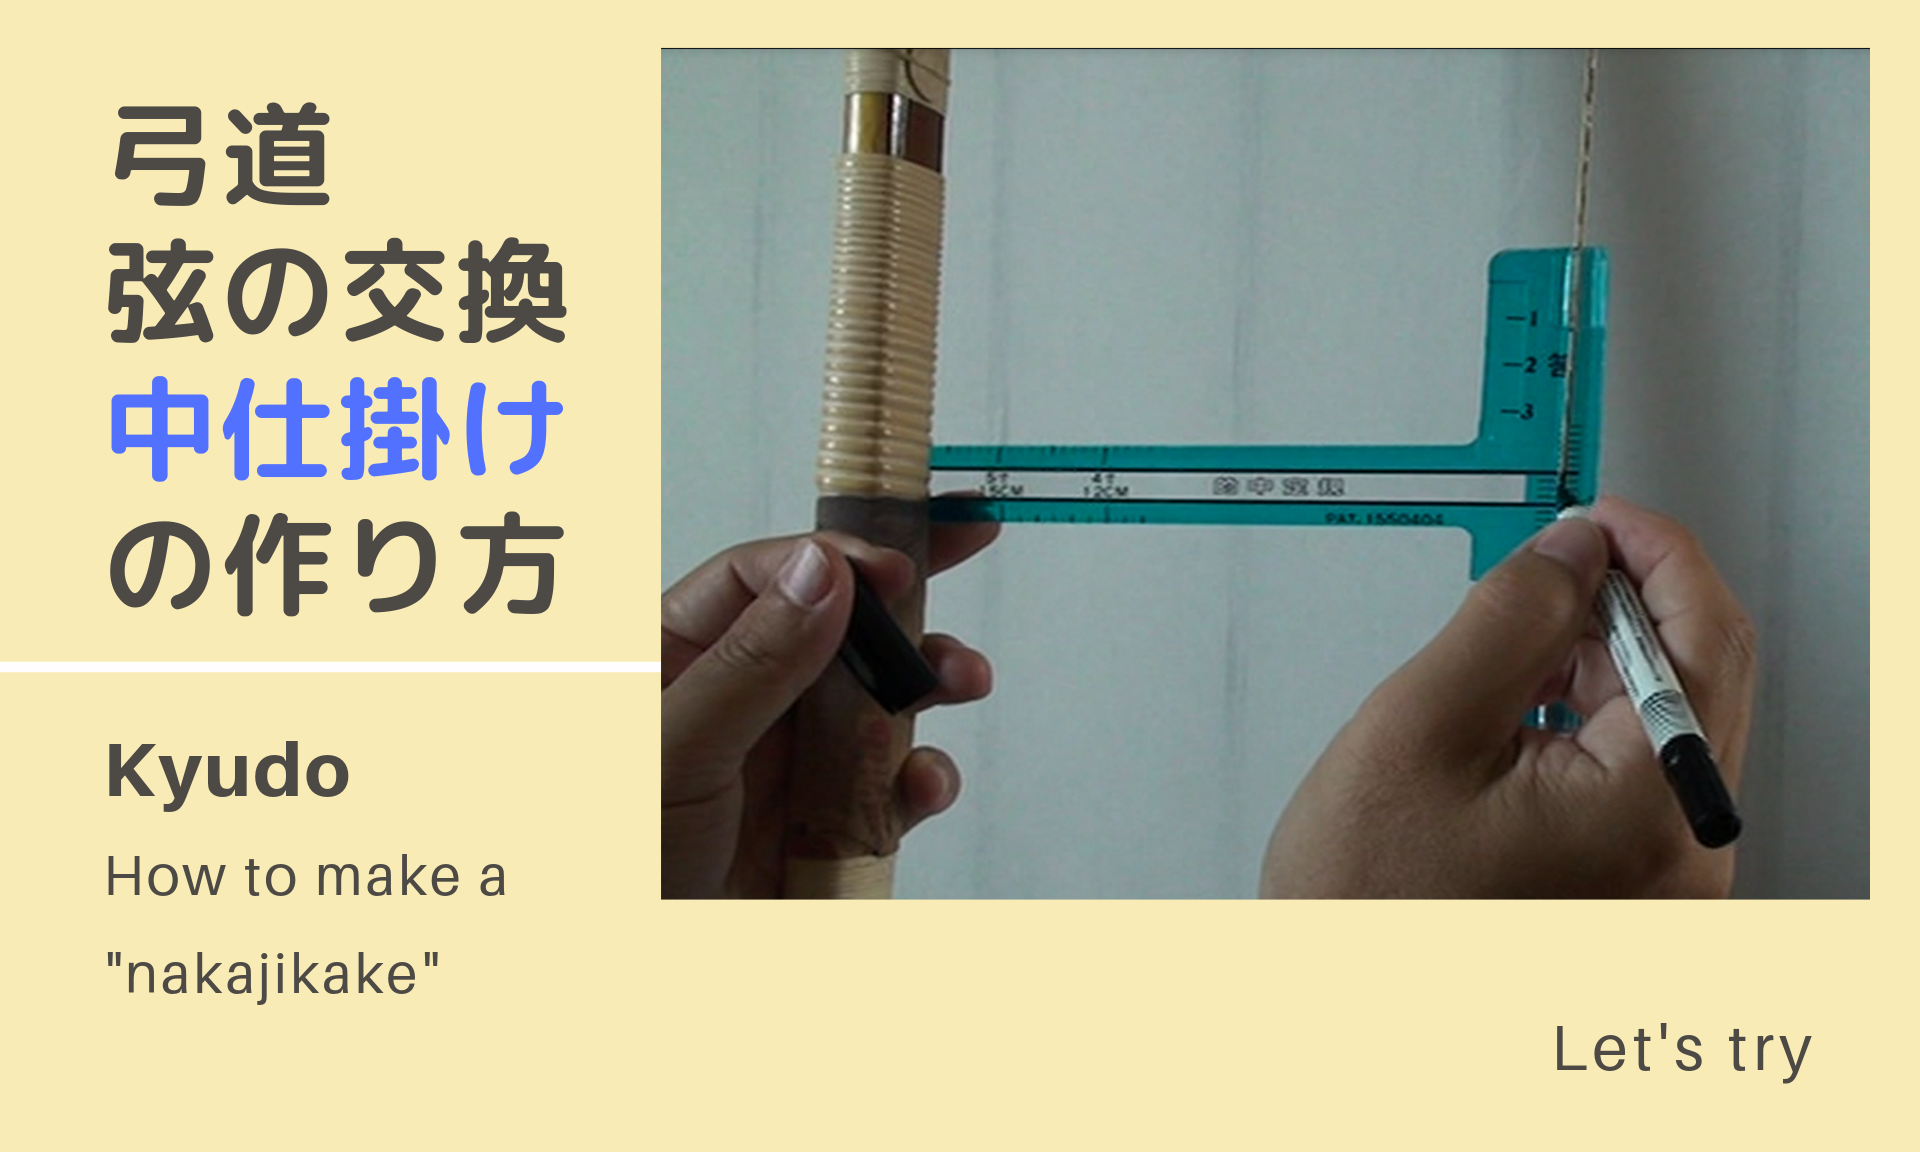 弓道中仕掛けの作り方 露 つゆ 太さと弦枕との関係について 動画あり 弓道 Kyudo を楽しむ